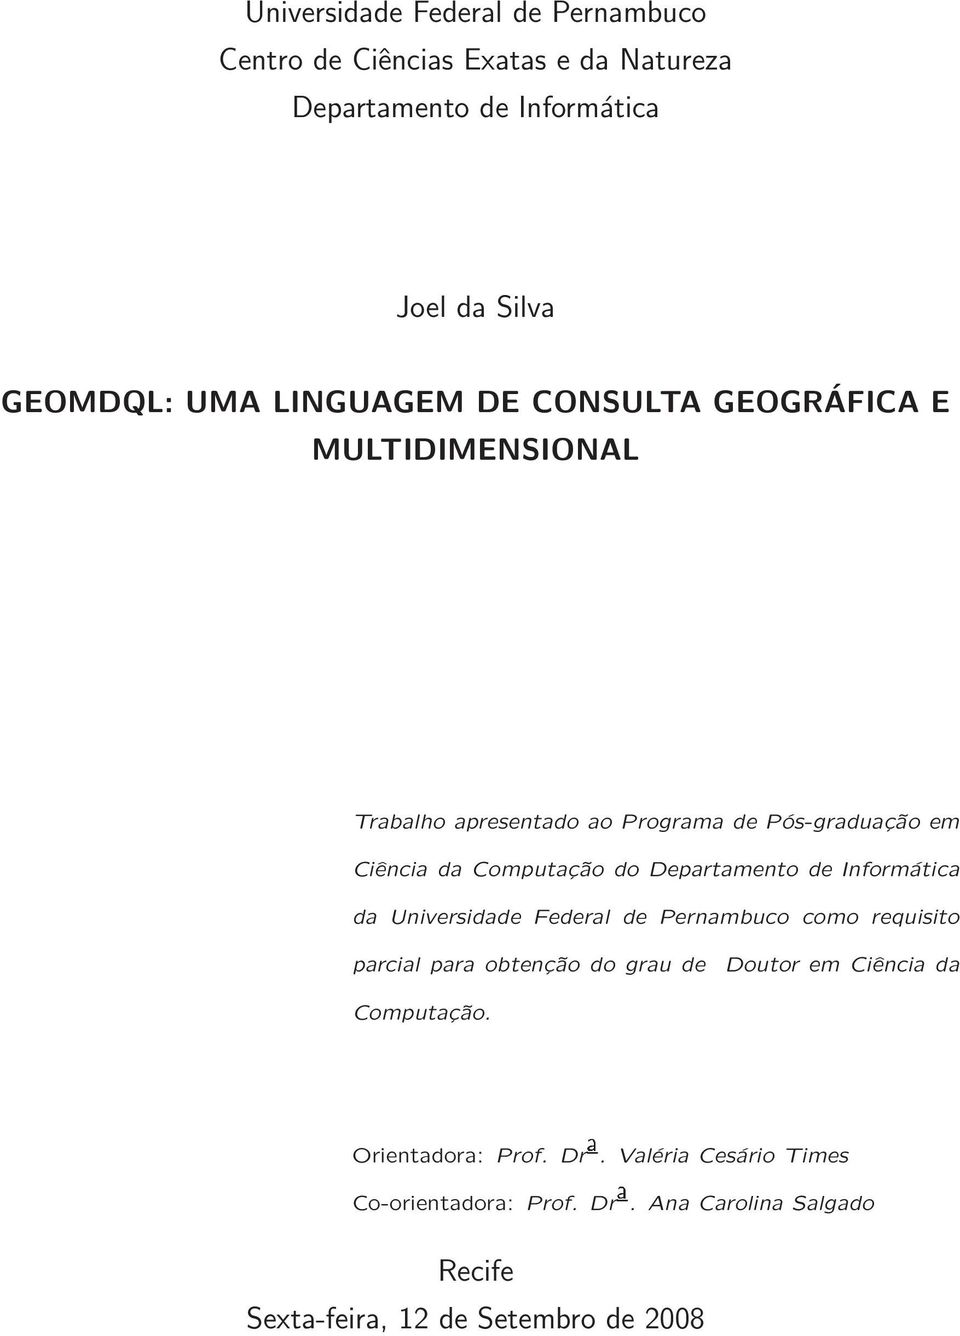 Departamento de Informática da Universidade Federal de Pernambuco como requisito parcial para obtenção do grau de Doutor em Ciência da